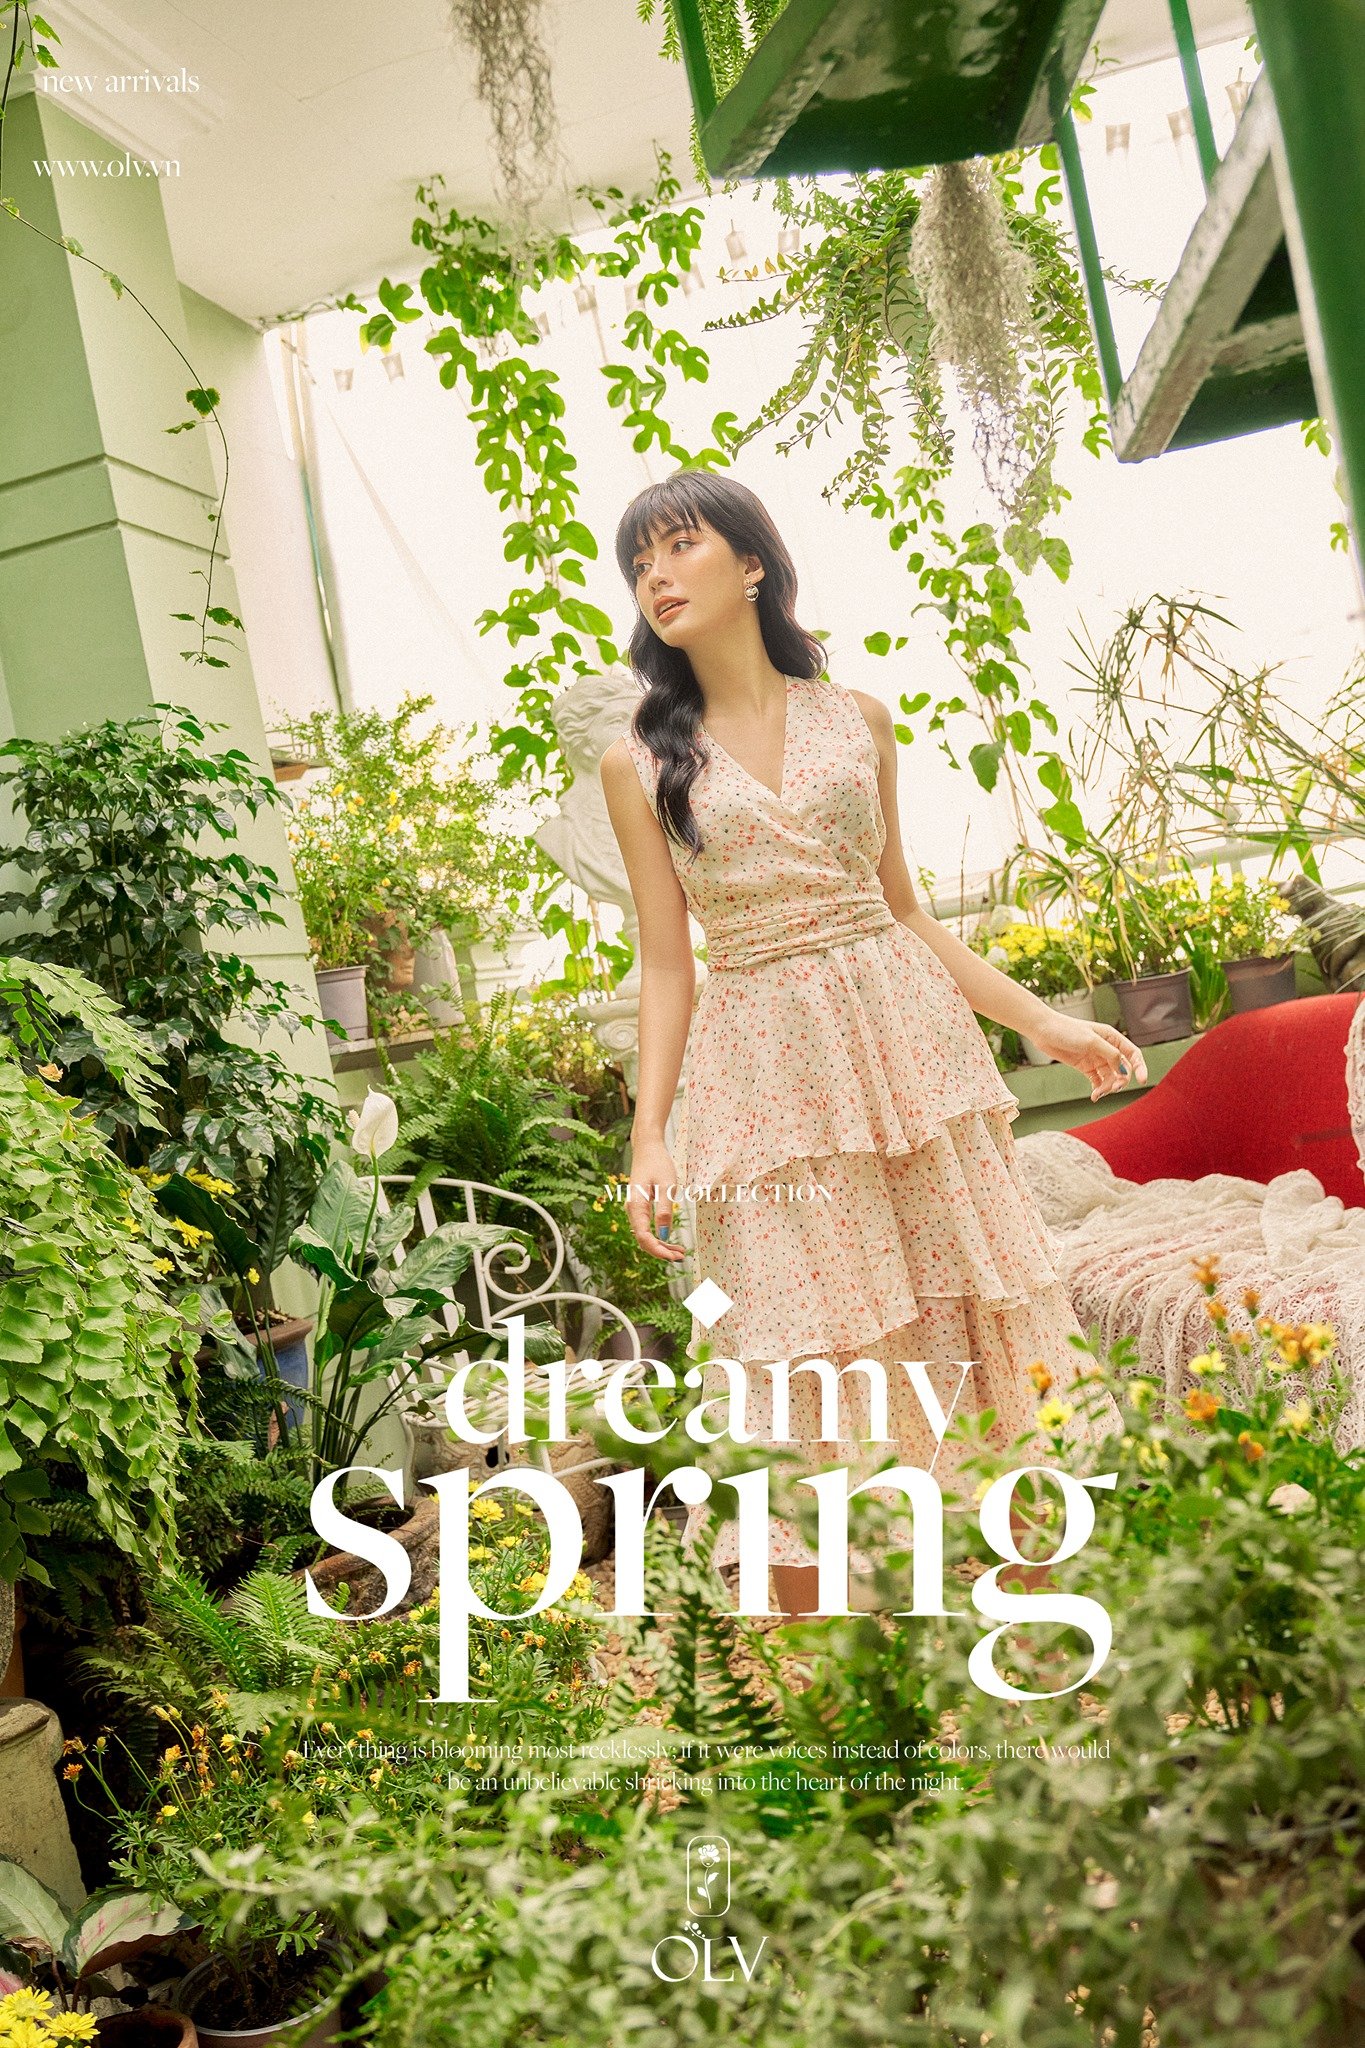 olv mini lookbook dreamy spring